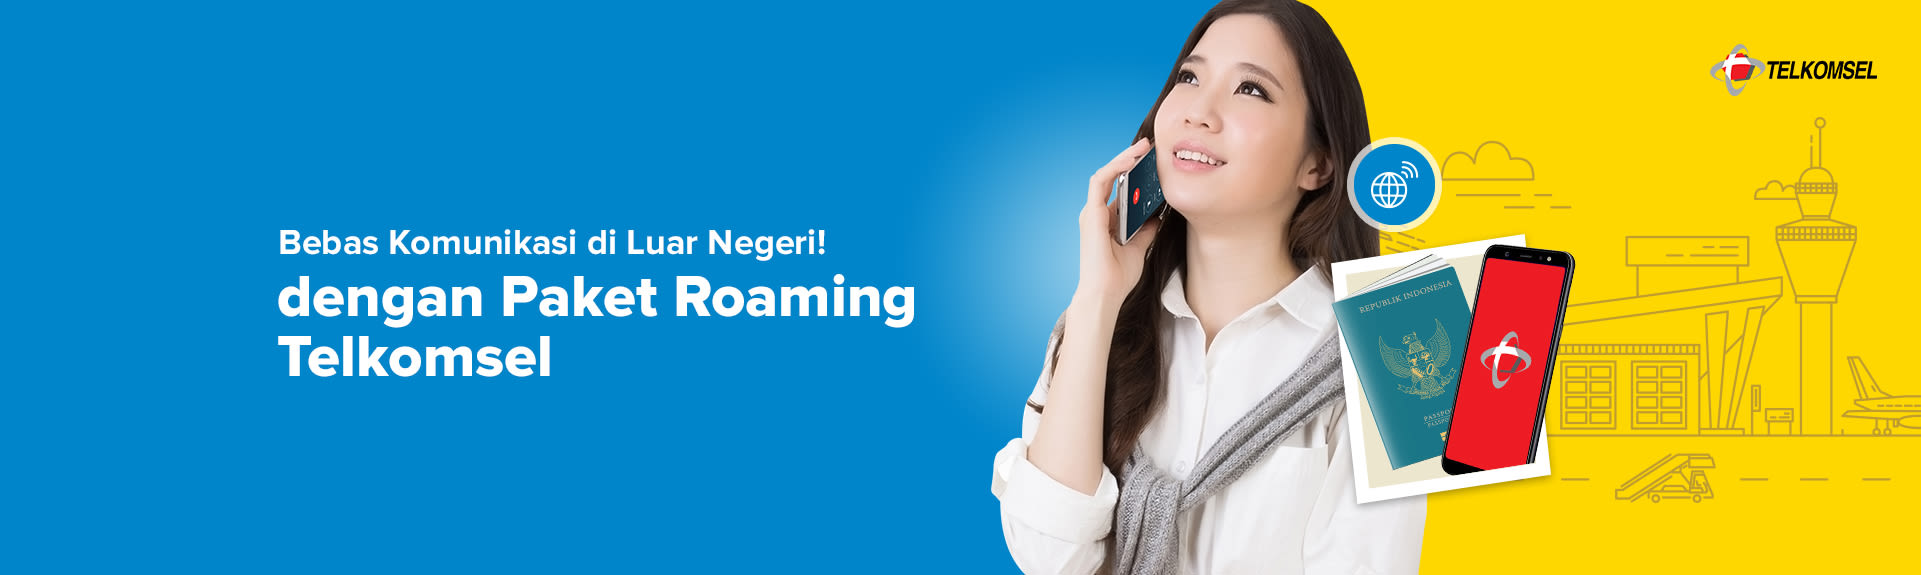 Paket Roaming Telkomsel Termurah, Harga Terbaik dan Proses Cepat! - Cermati.com